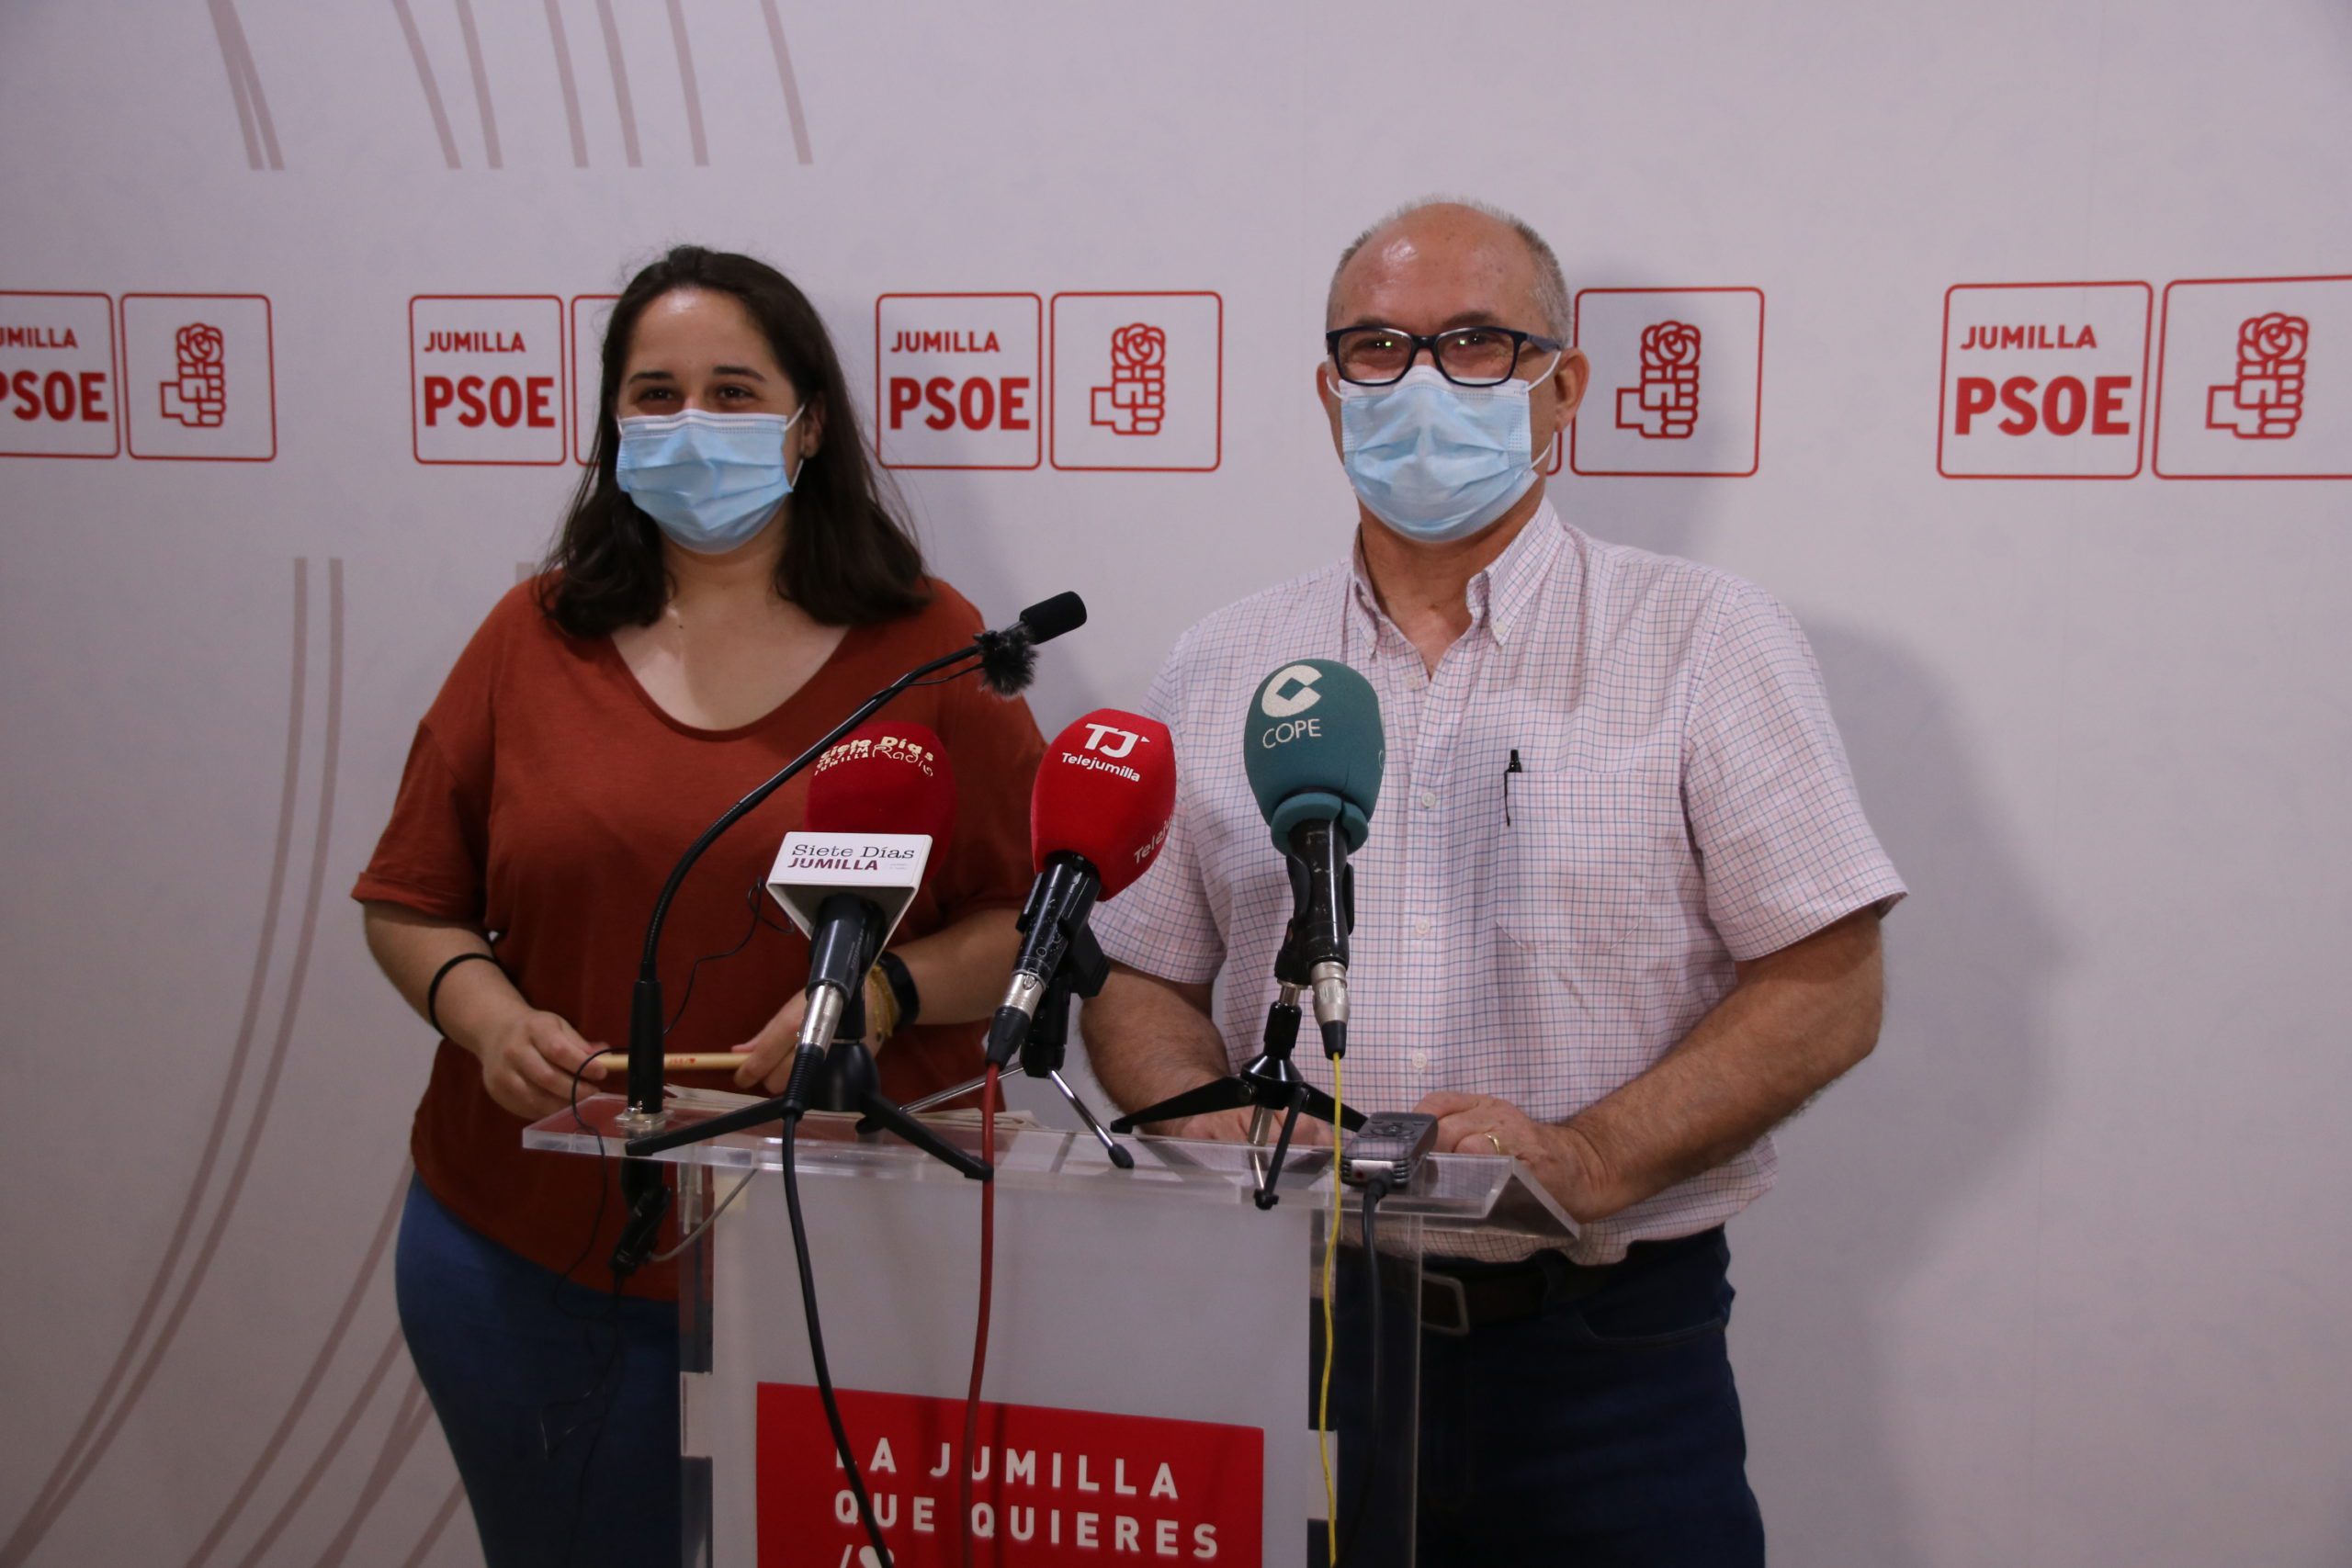 El PSOE muestra su “sorpresa” por la “connivencia” en el pleno entre PP y Cs